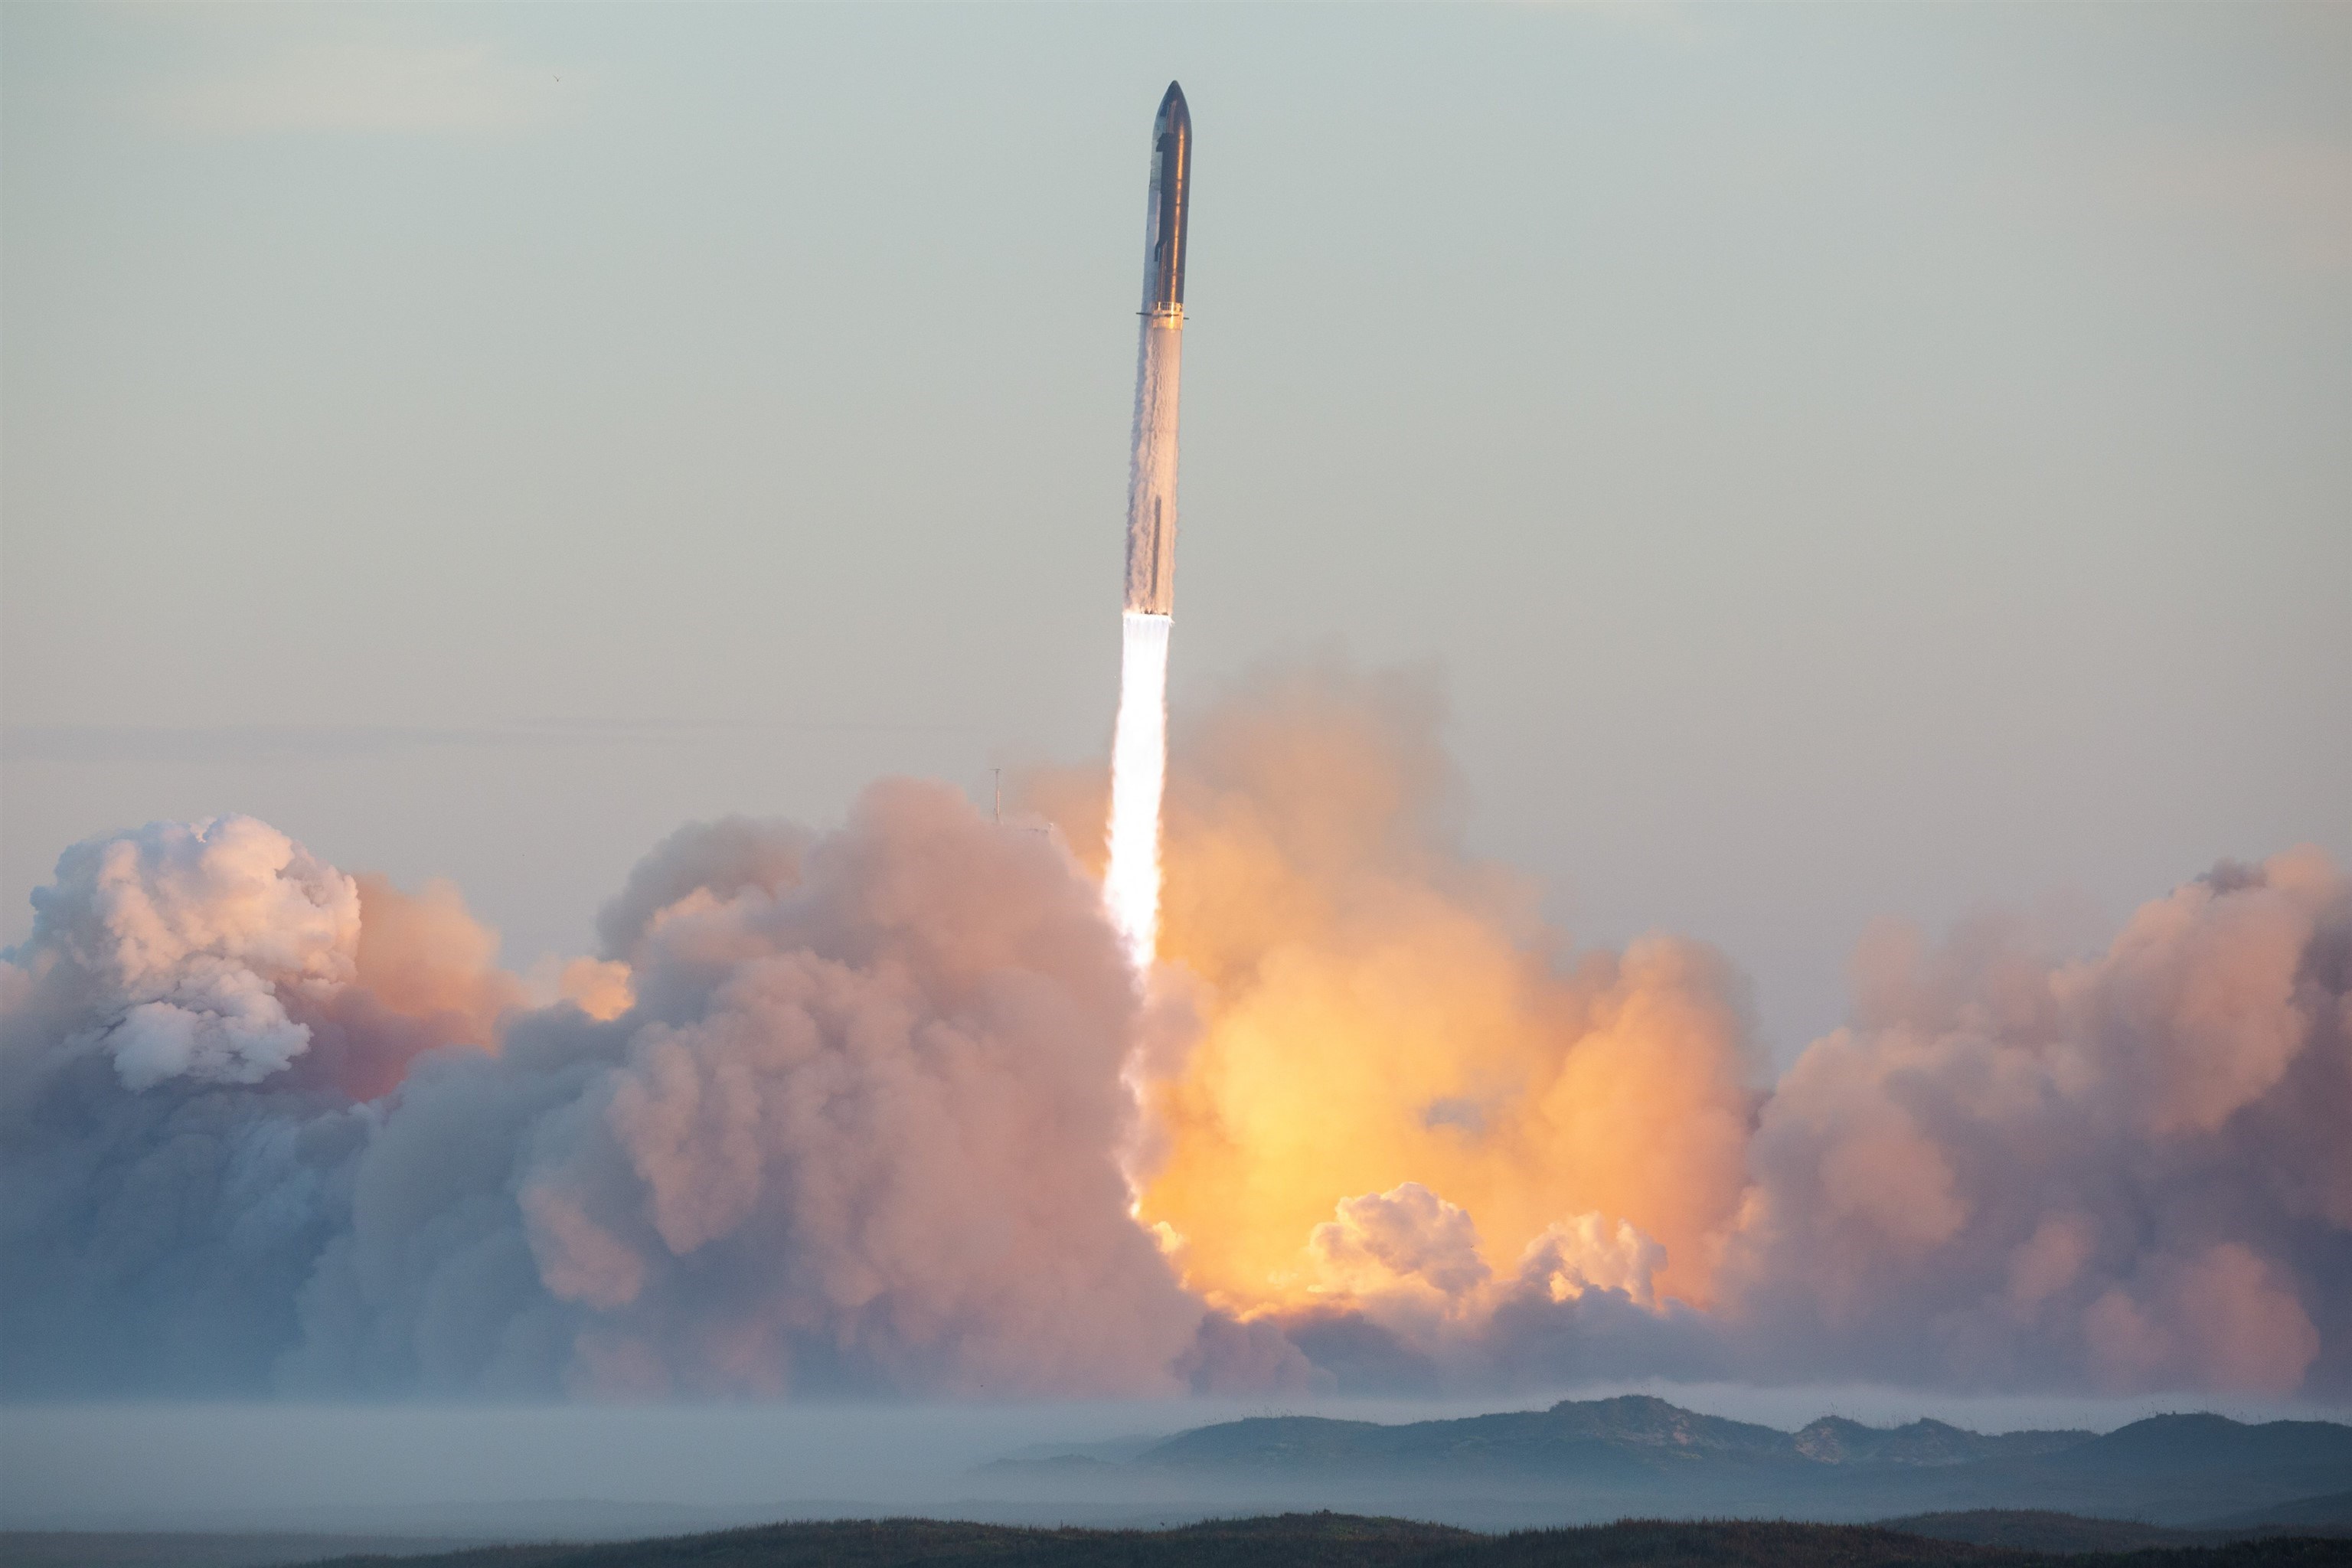 Elon Musk’ın dev roketi bu sefer fırlatma rampasına zarar vermedi